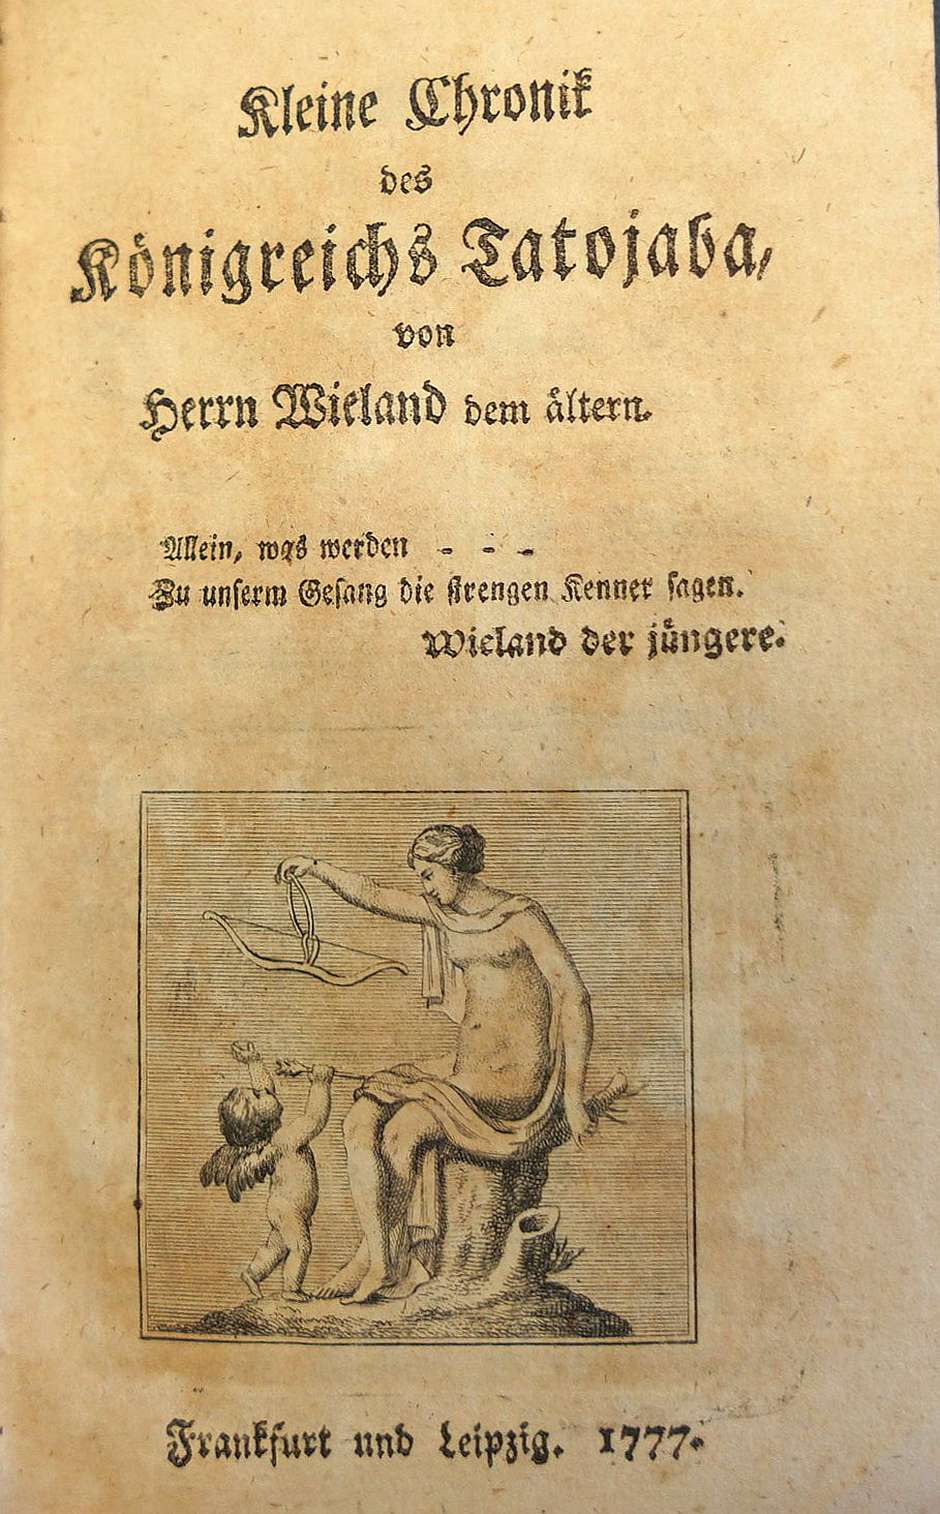 Lot 2141, Auction  115, Remer, Julius August, Kleine Chronik des Königreichs Tatojaba von Herrn Wieland dem älteren 